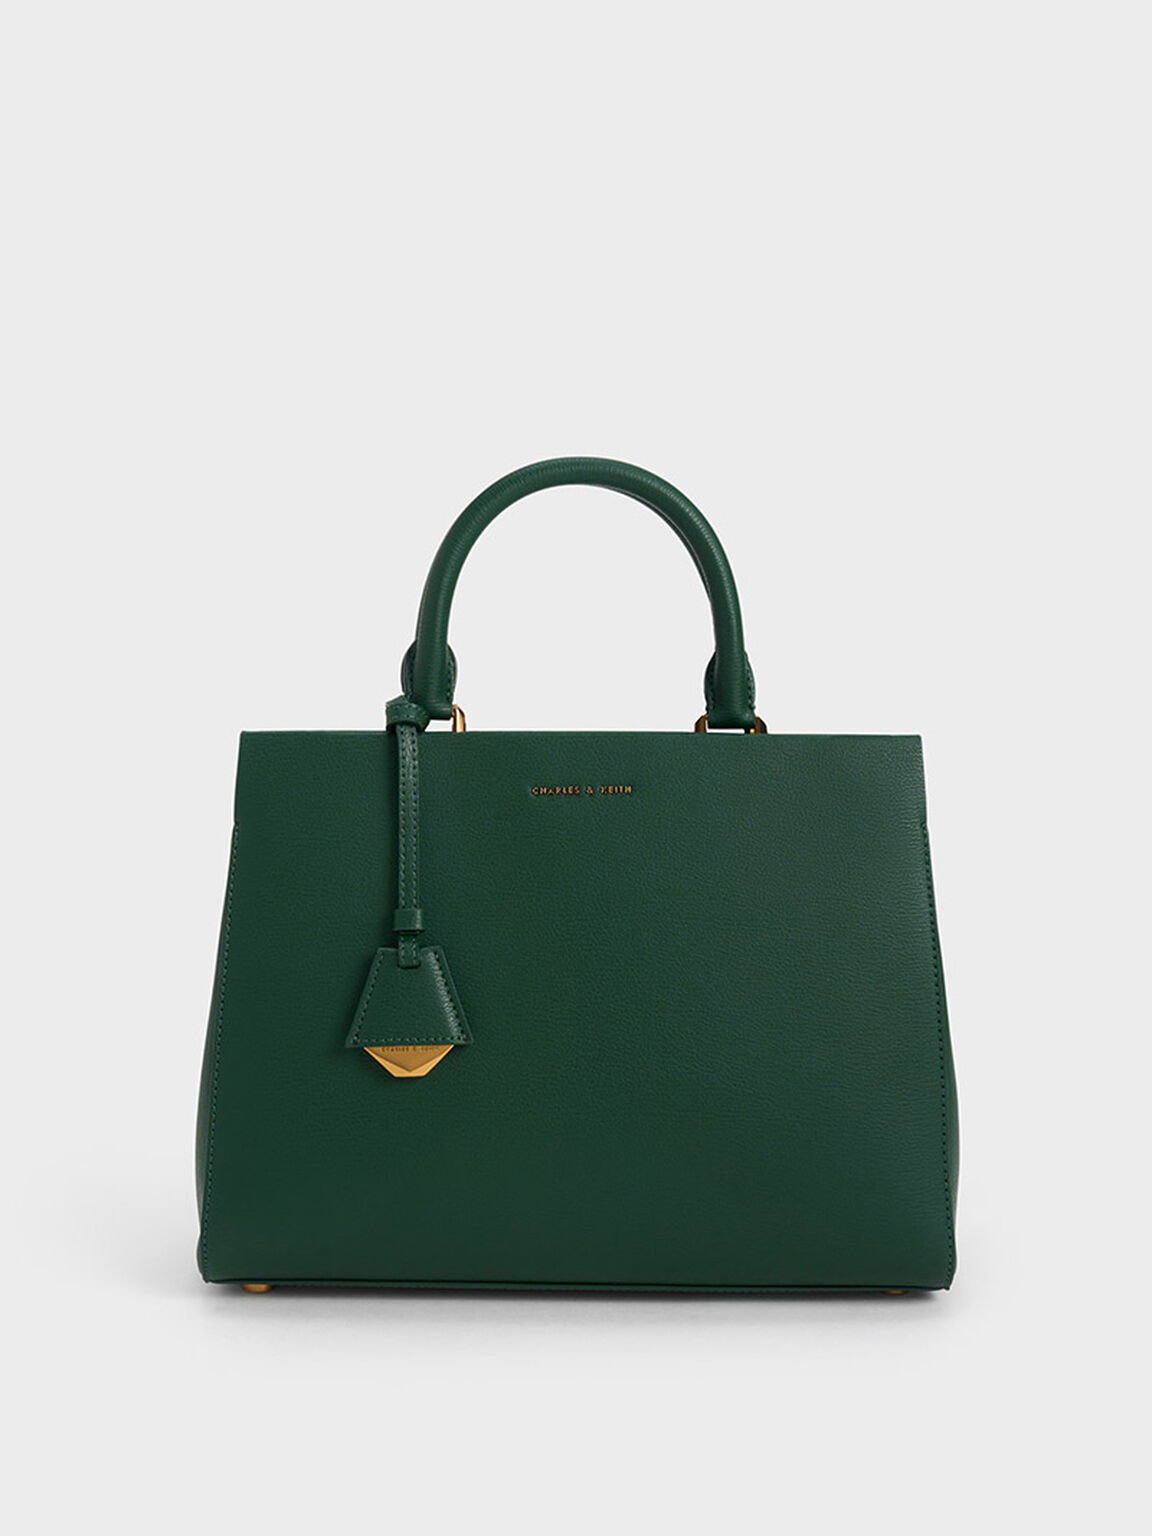 Classic Structured Handbag, Dark Green, hi-res